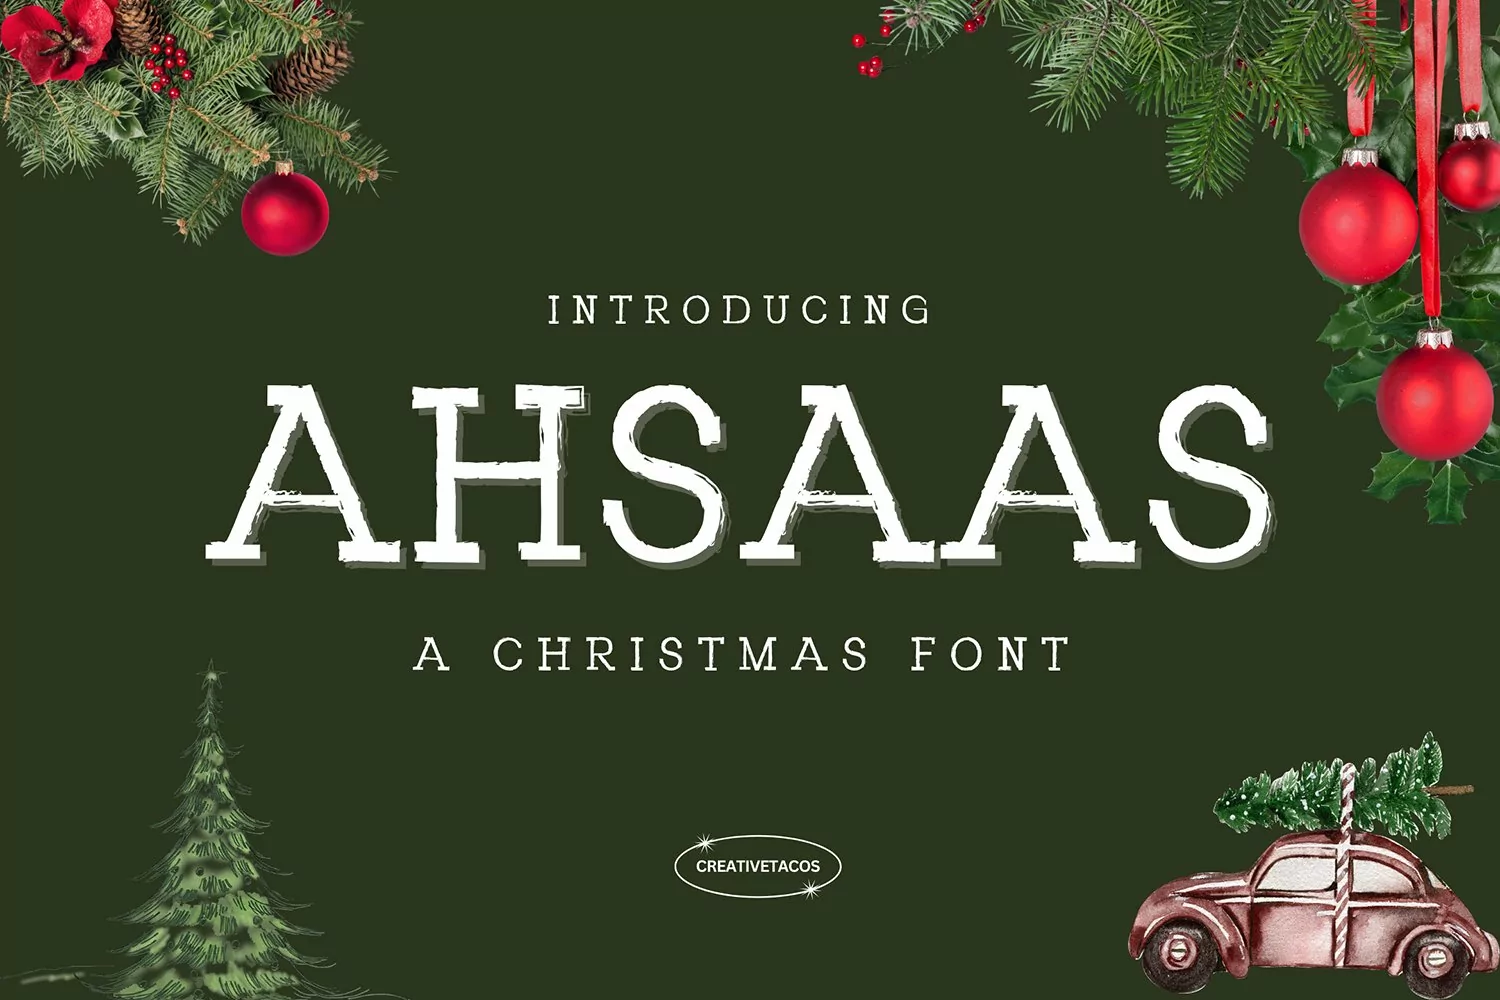 Ahsaas Christmas Font